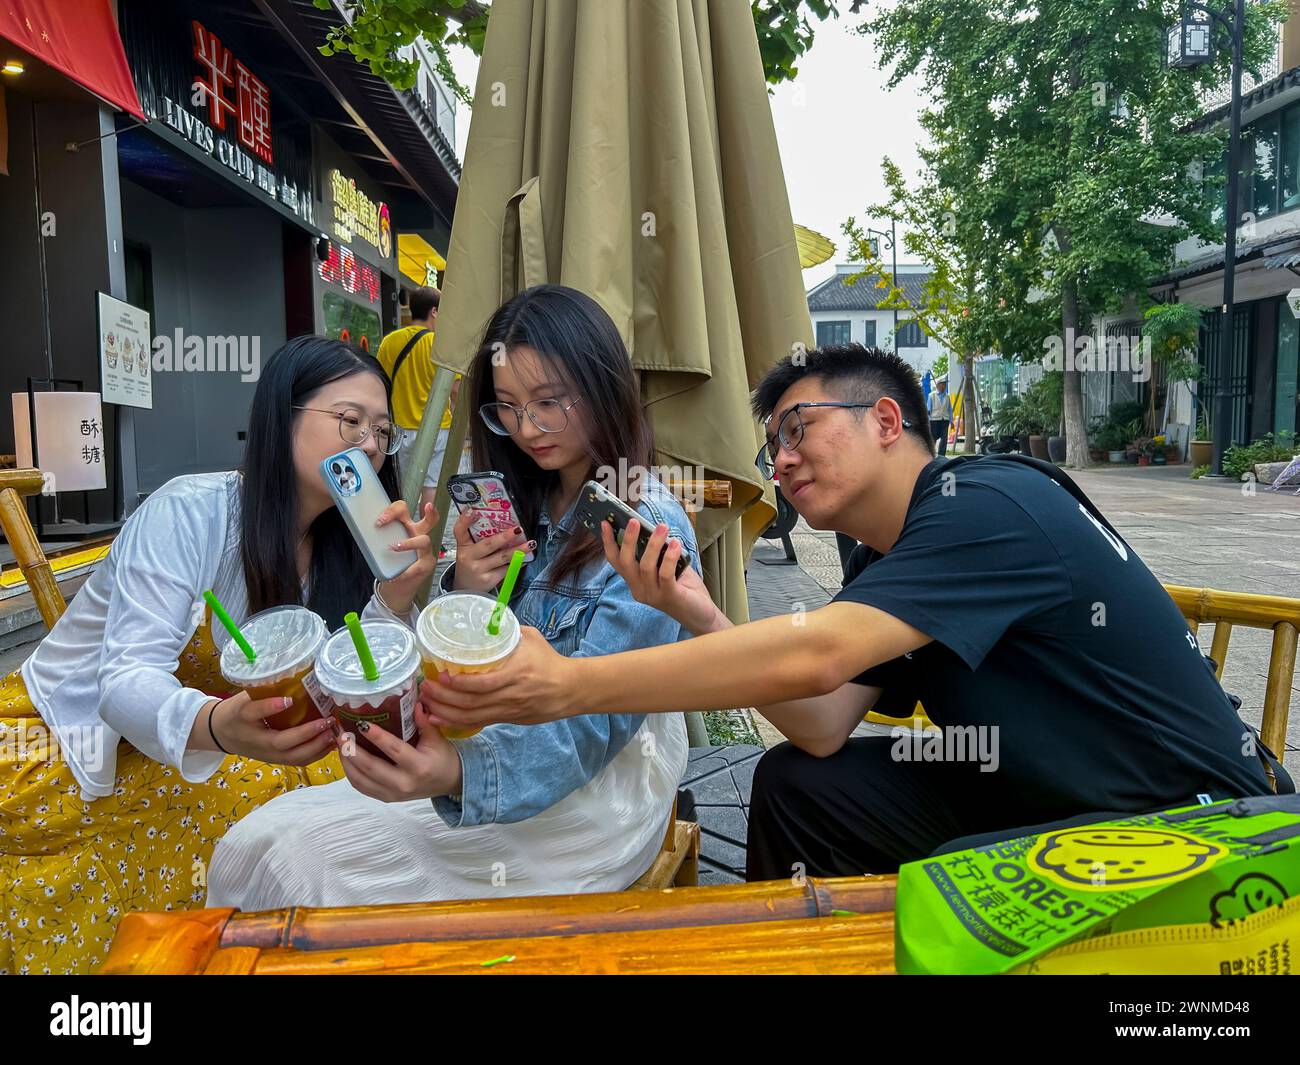 Suzhou, Cina, turisti cinesi, adolescenti che bevono bevande analcoliche, scene di strada, centro storico della città vecchia, scattare selfie su smartphone Foto Stock